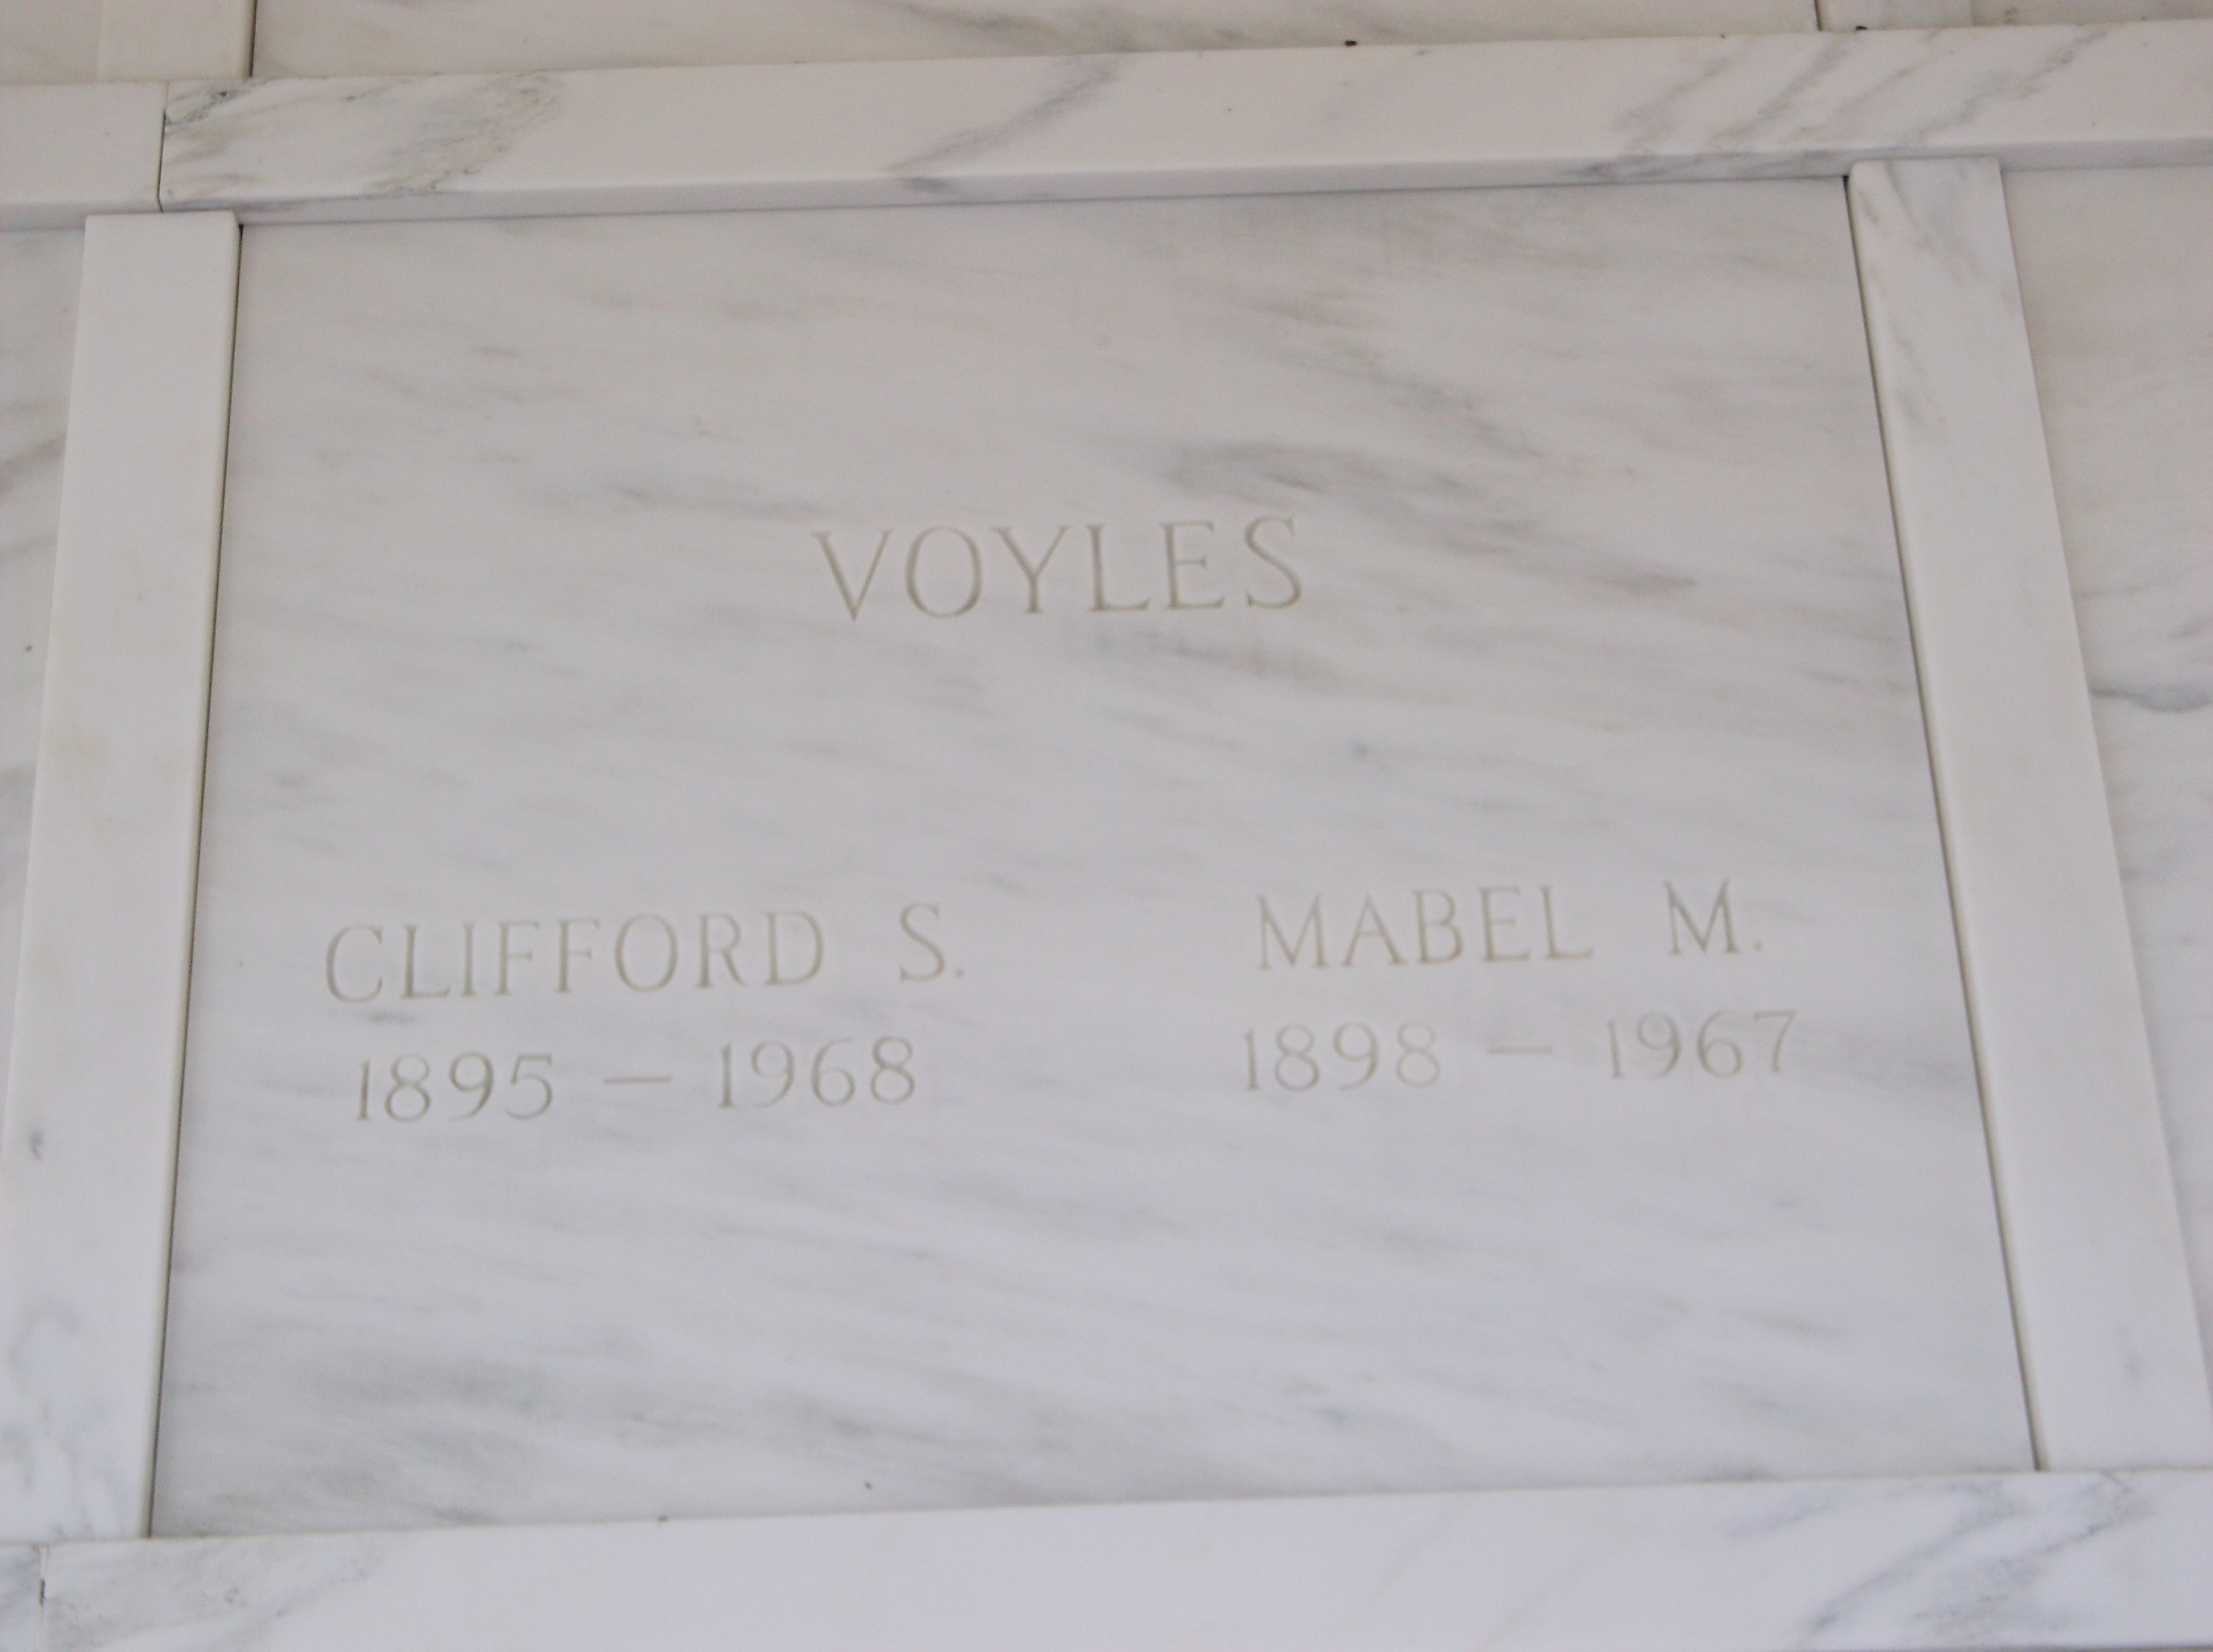 Clifford S Voyles